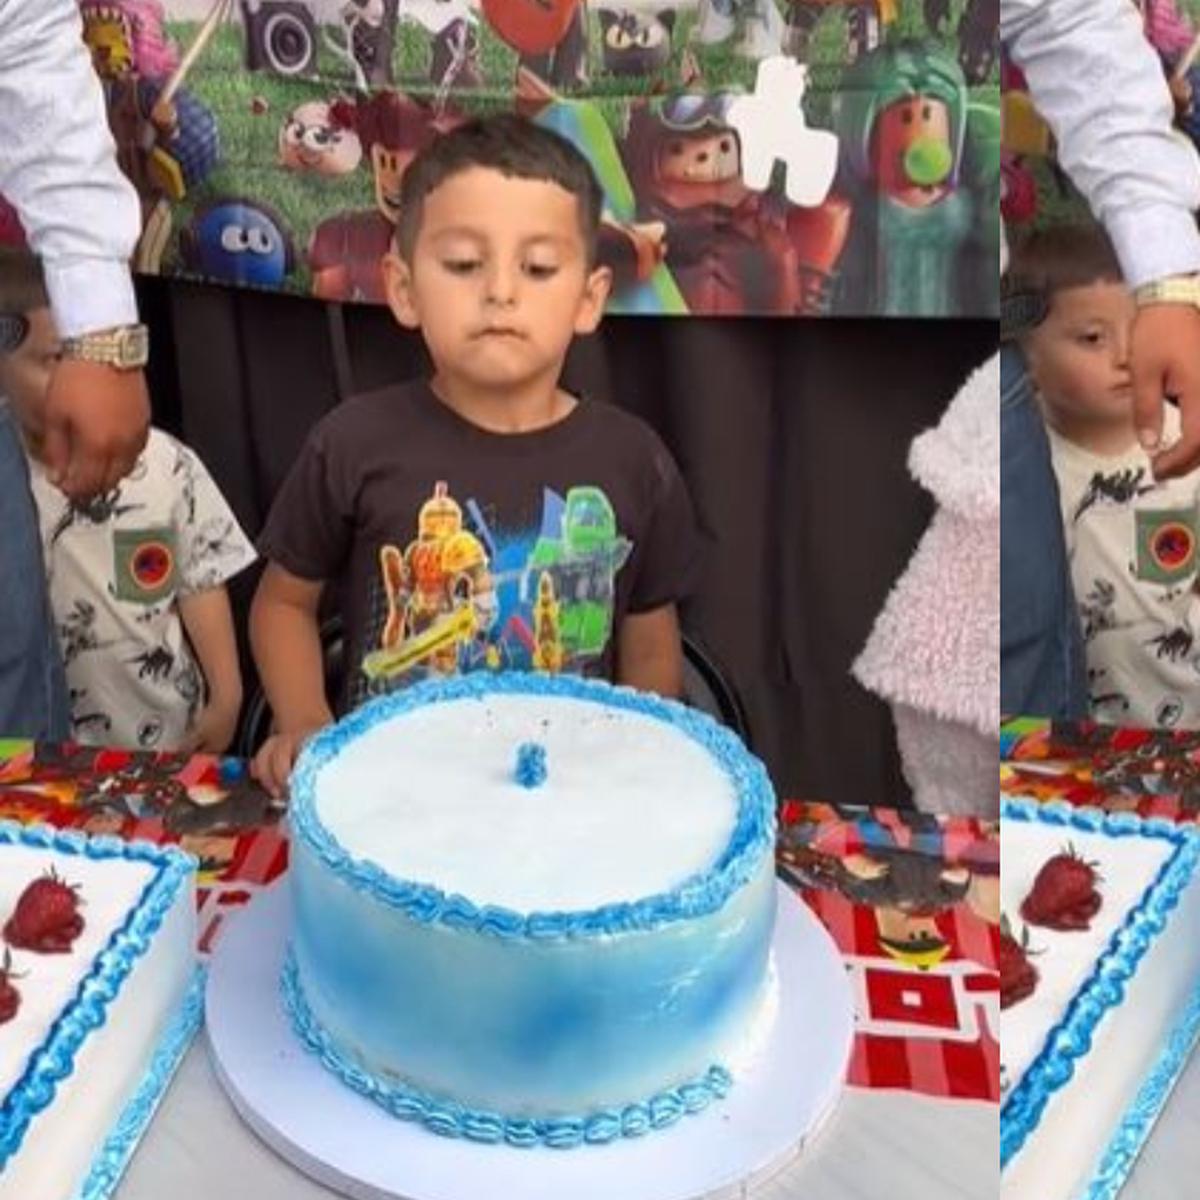 Niño, Niña, cuidado, torta de cumpleaños, tabla, mentira, celebrar